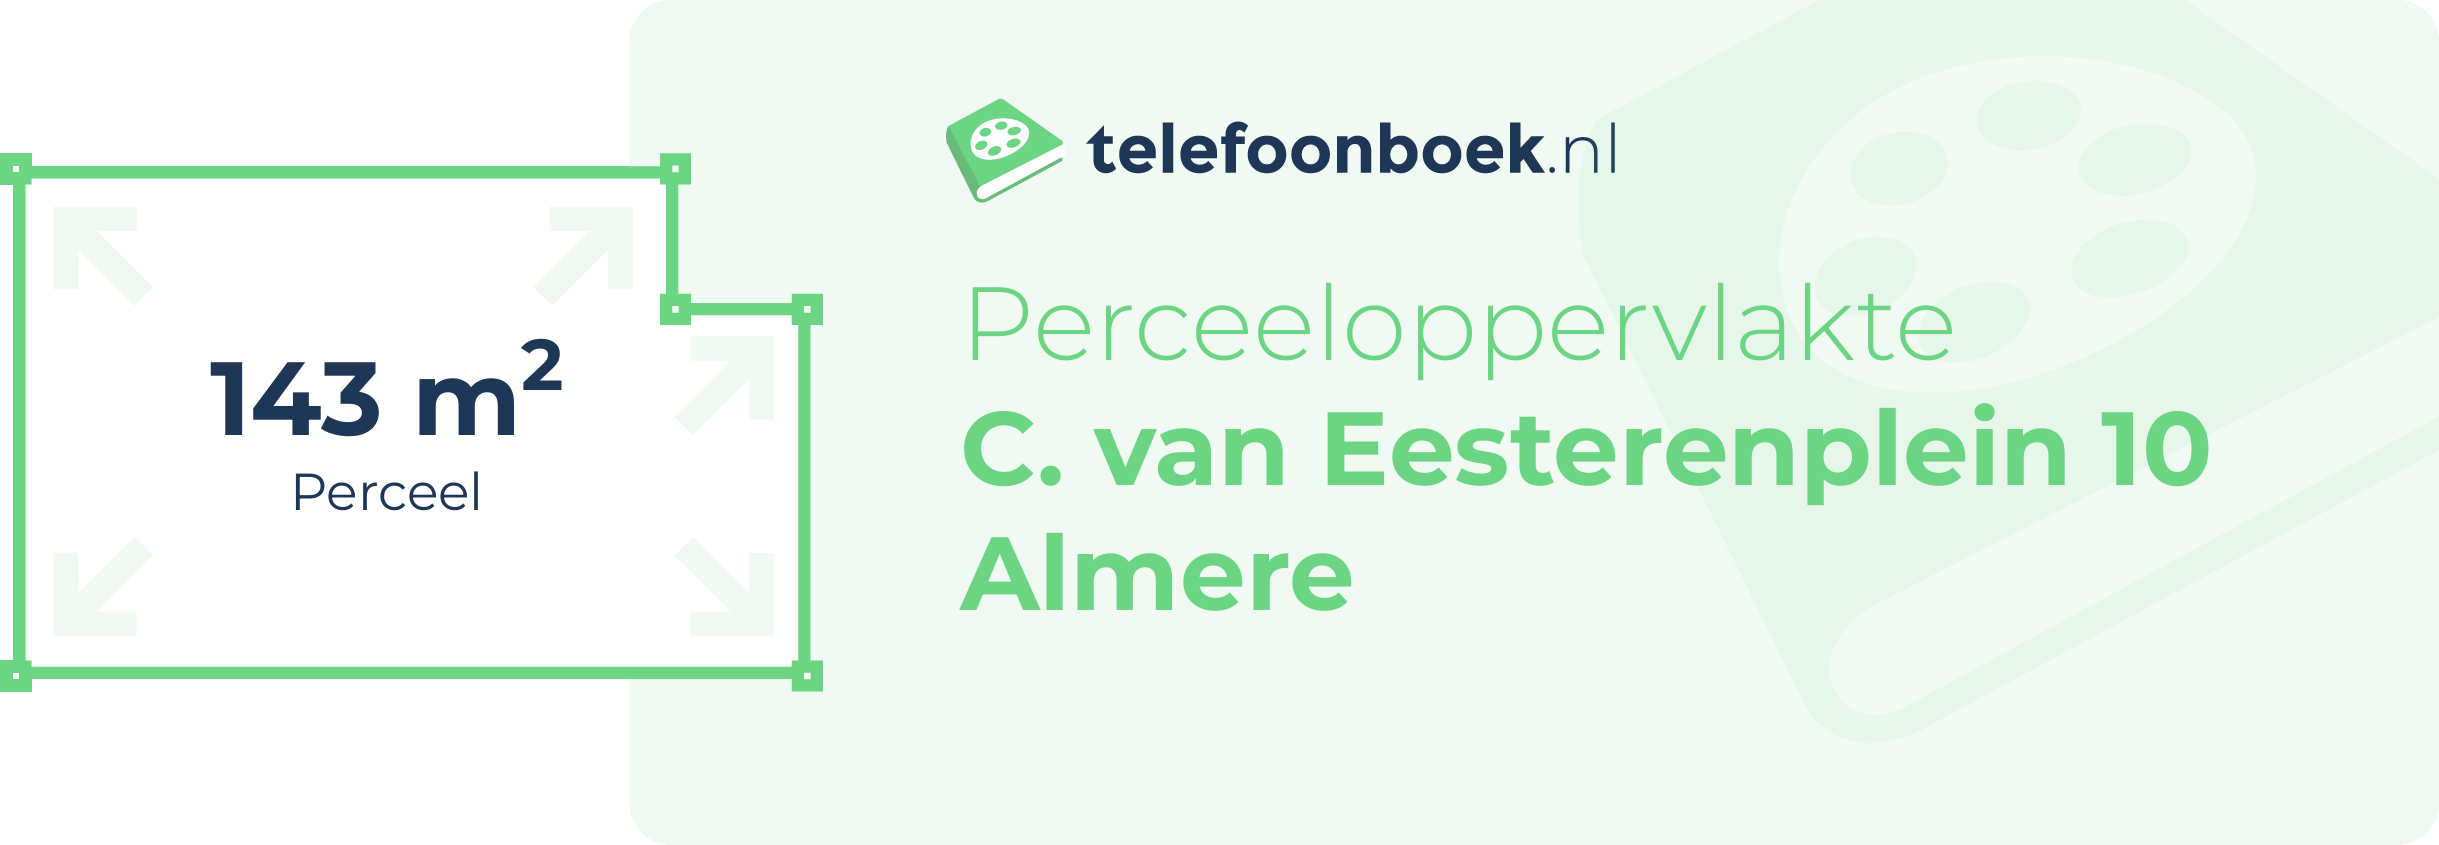 Perceeloppervlakte C. Van Eesterenplein 10 Almere